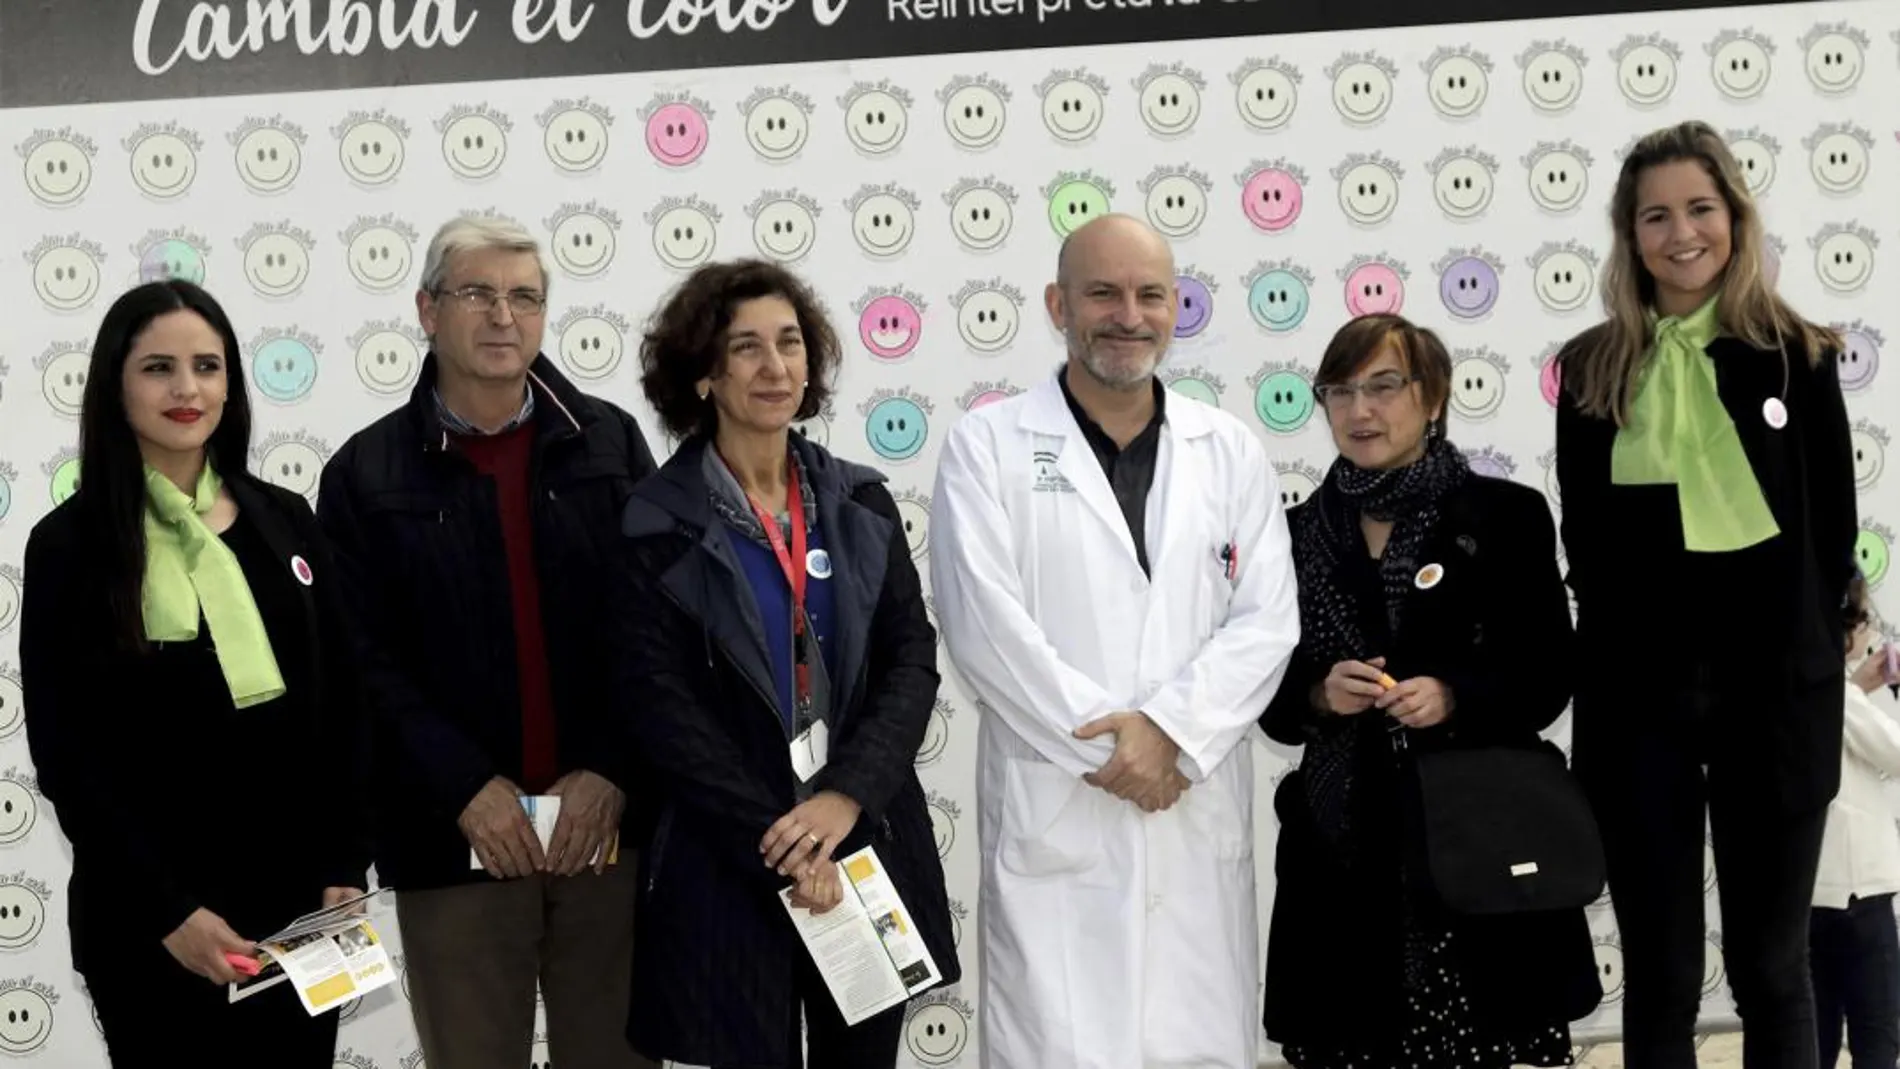 Con motivo del Día de las Enfermedades Raras, que se celebra el 28 de febrero, ayer tuvo lugar en Sevilla la campaña «Cambia el color. Reinterpreta la CBP», promovida por la asociación de pacientes Albi-España (Asociación para la lucha contra las enfermedades biliares inflamatorias)